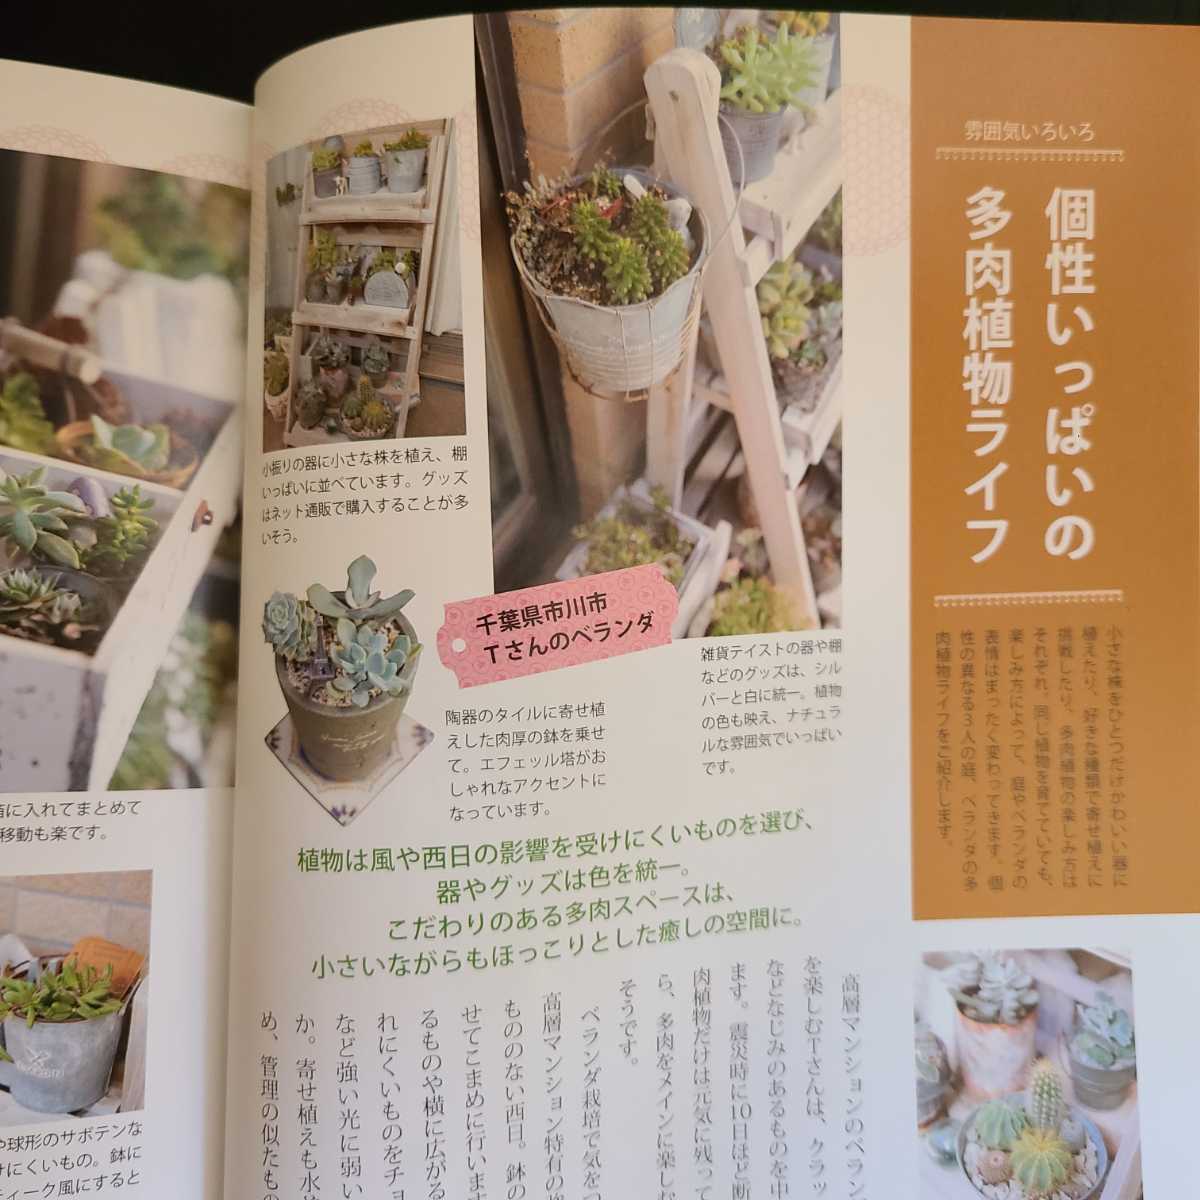  впервые .. суккулентное растение садоводство книга@ суккулентное растение садоводство литература 